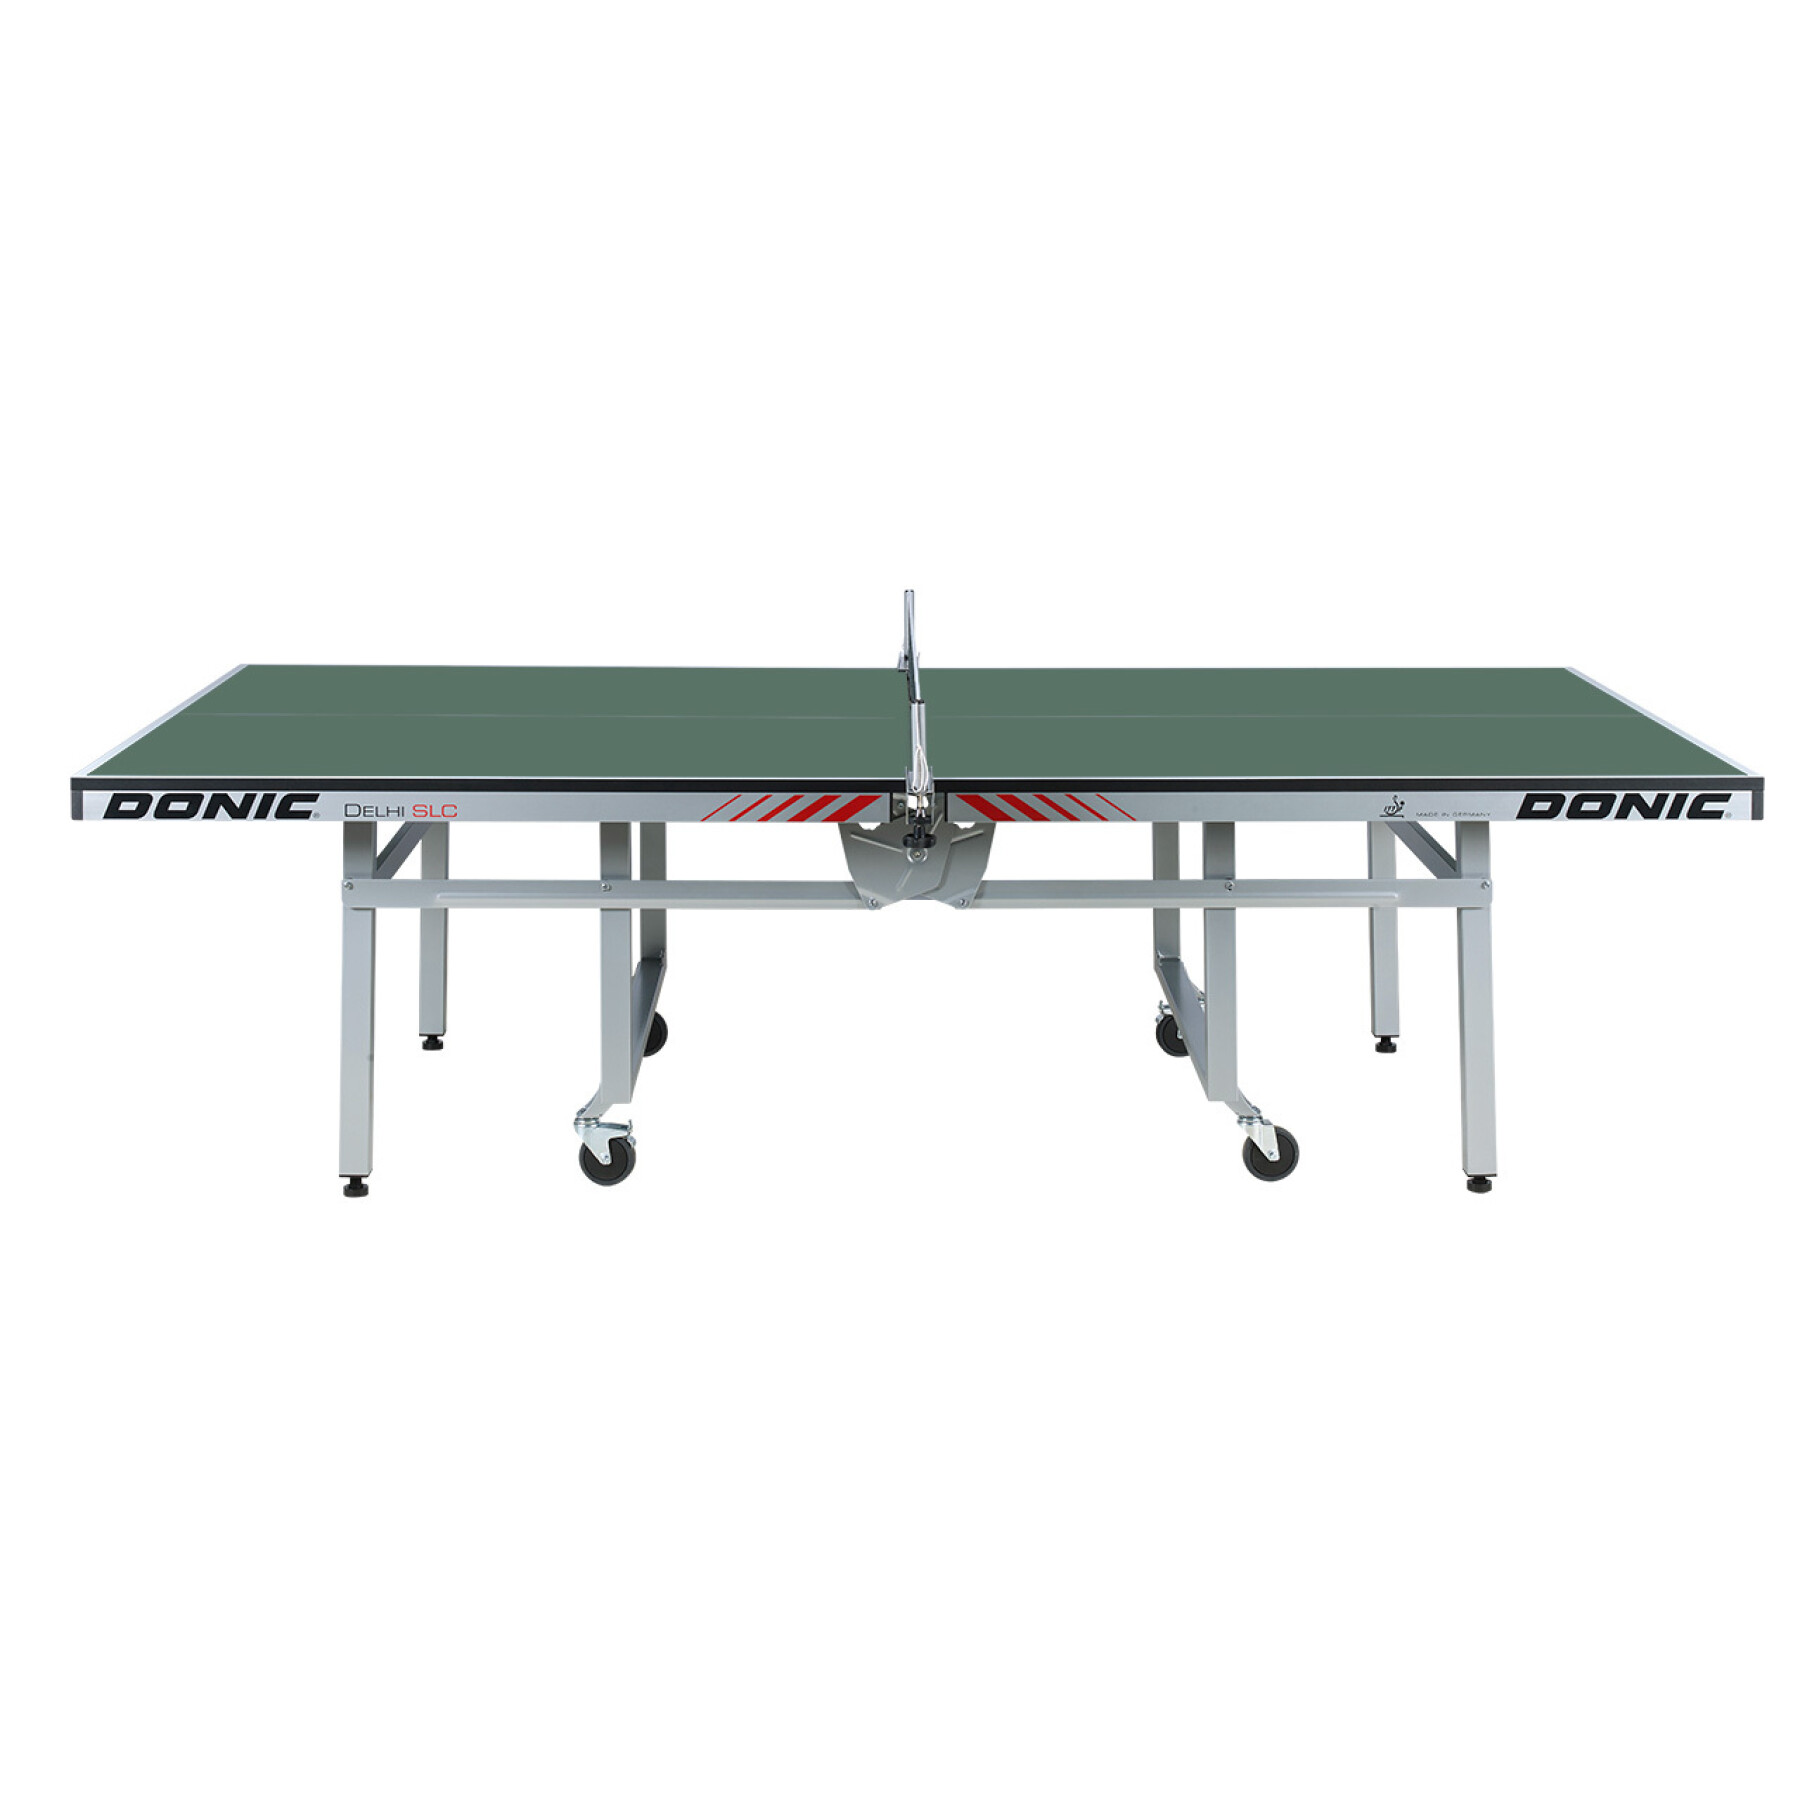 Tavolo da ping pong, completamente assemblato e omologato Donic Delhi SLC ** ITTF